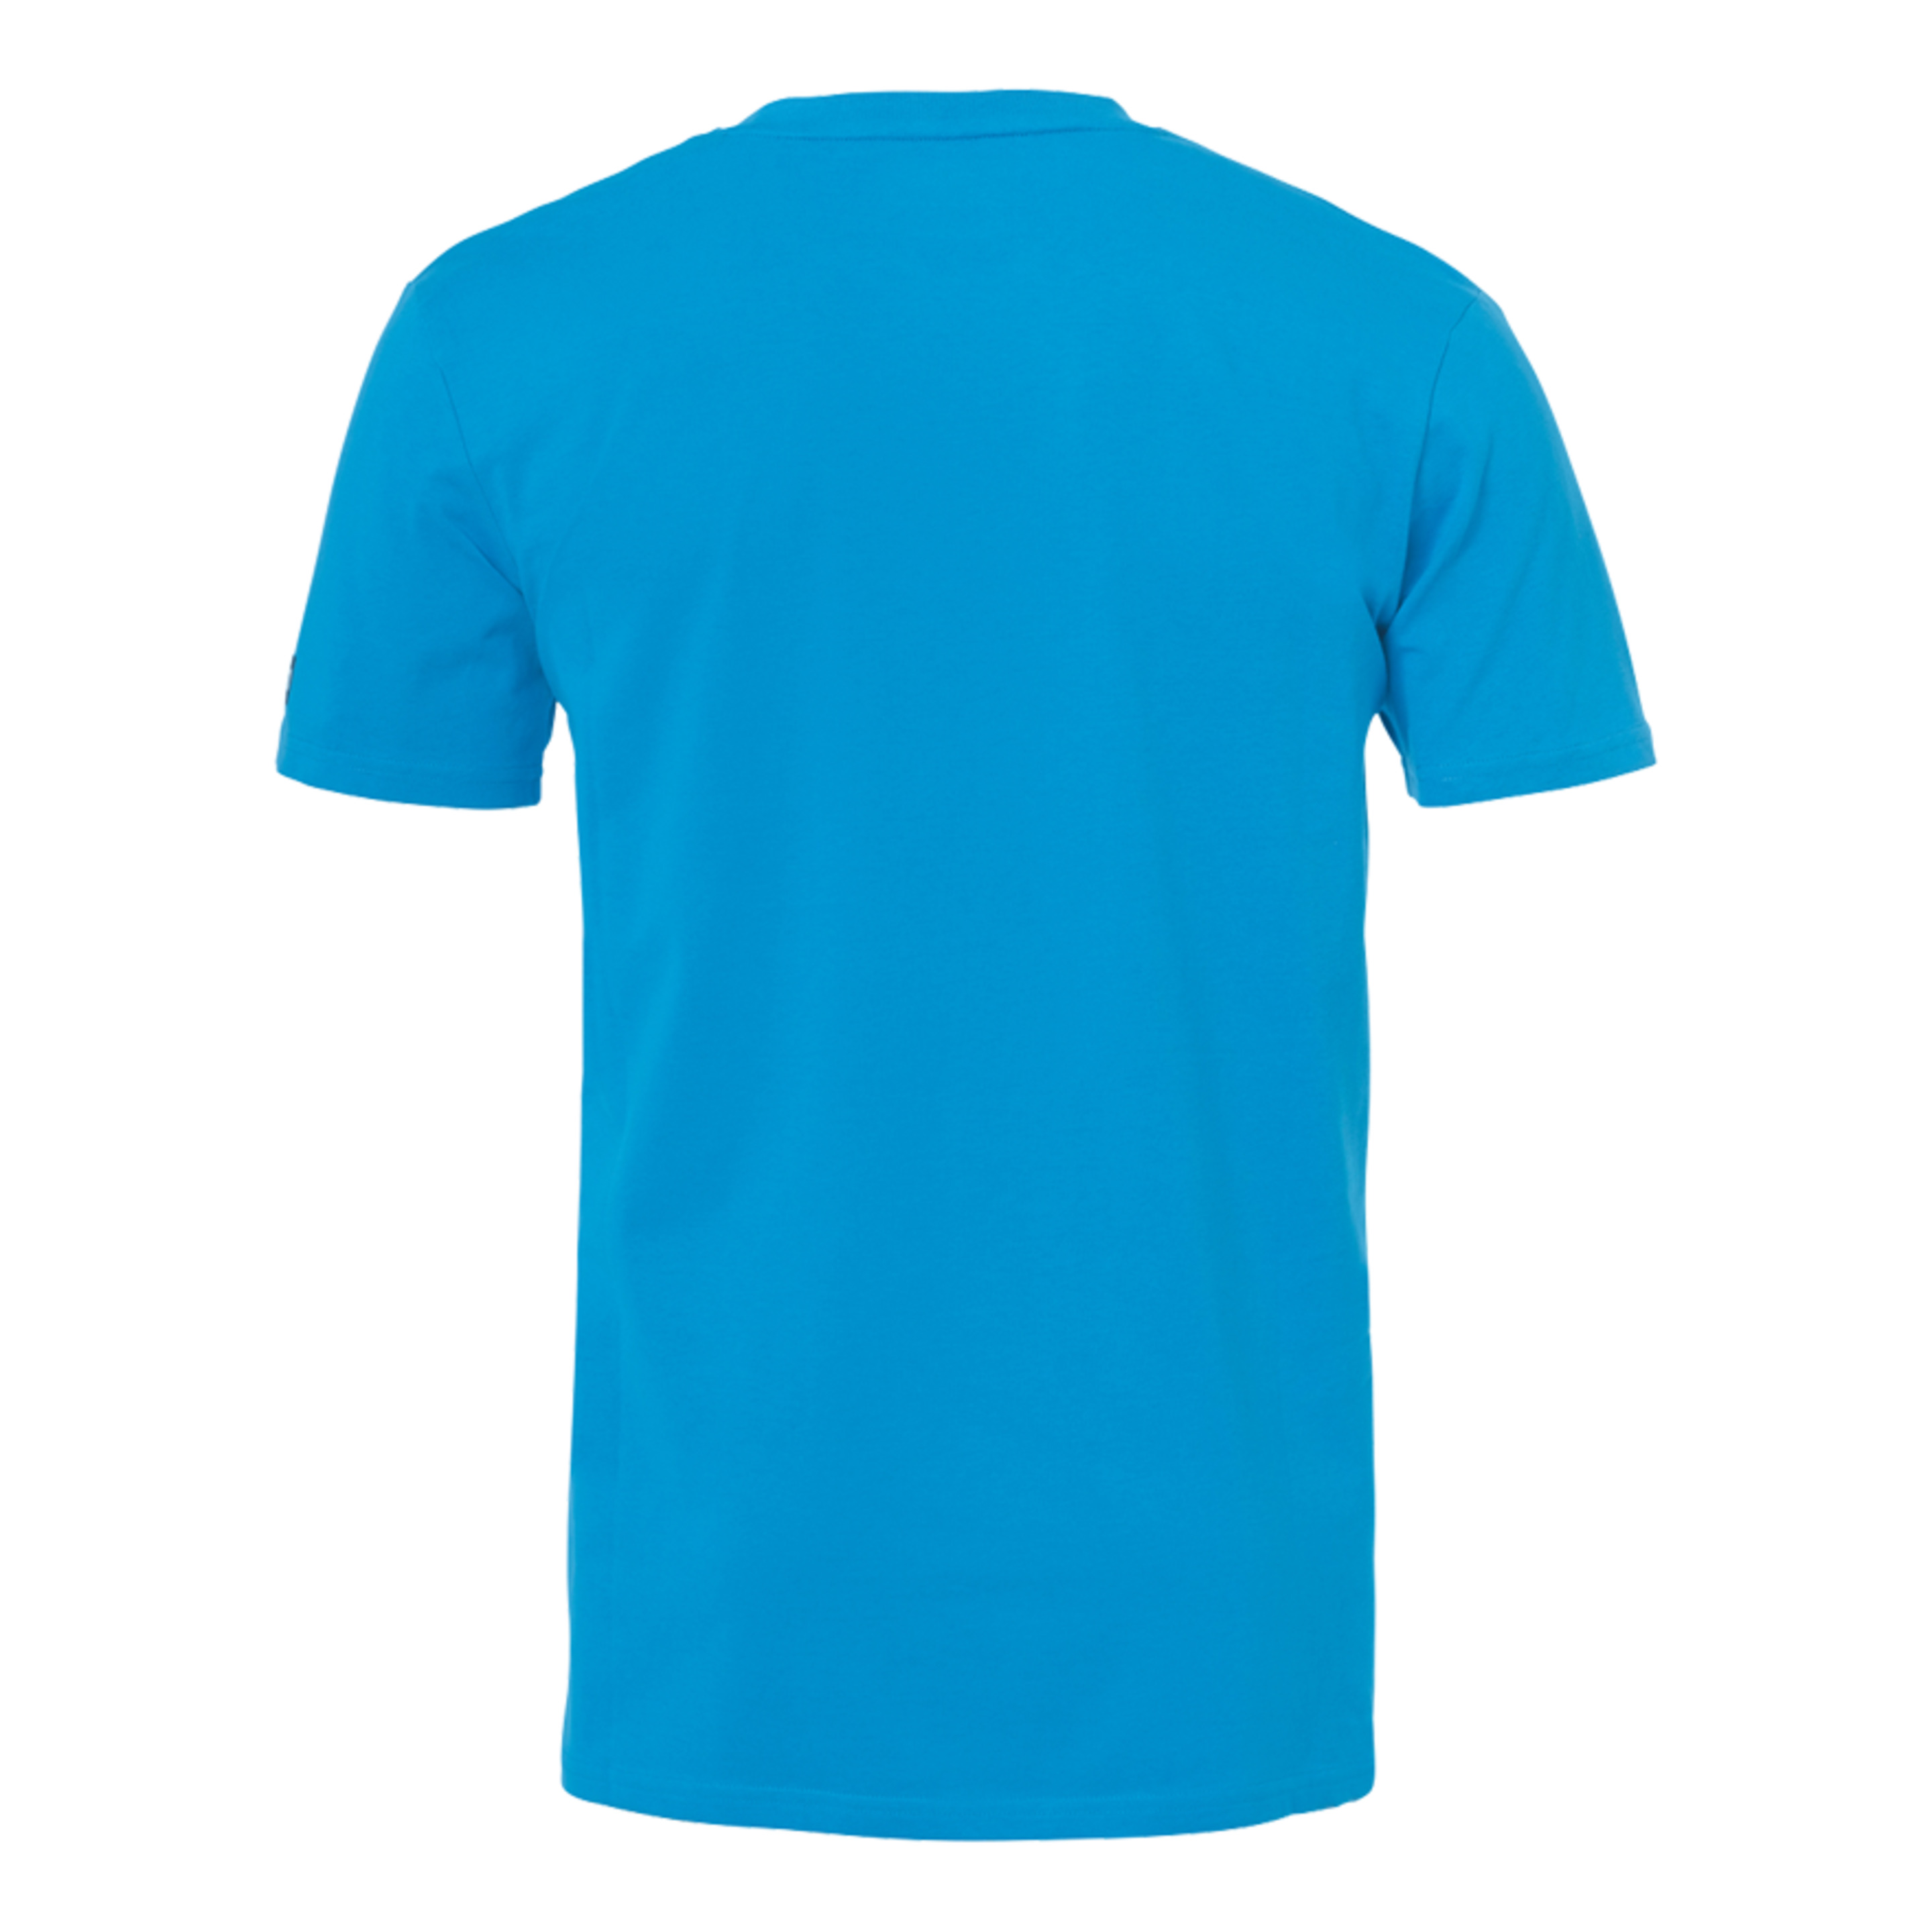 Team Camiseta Kempa Azul Kempa